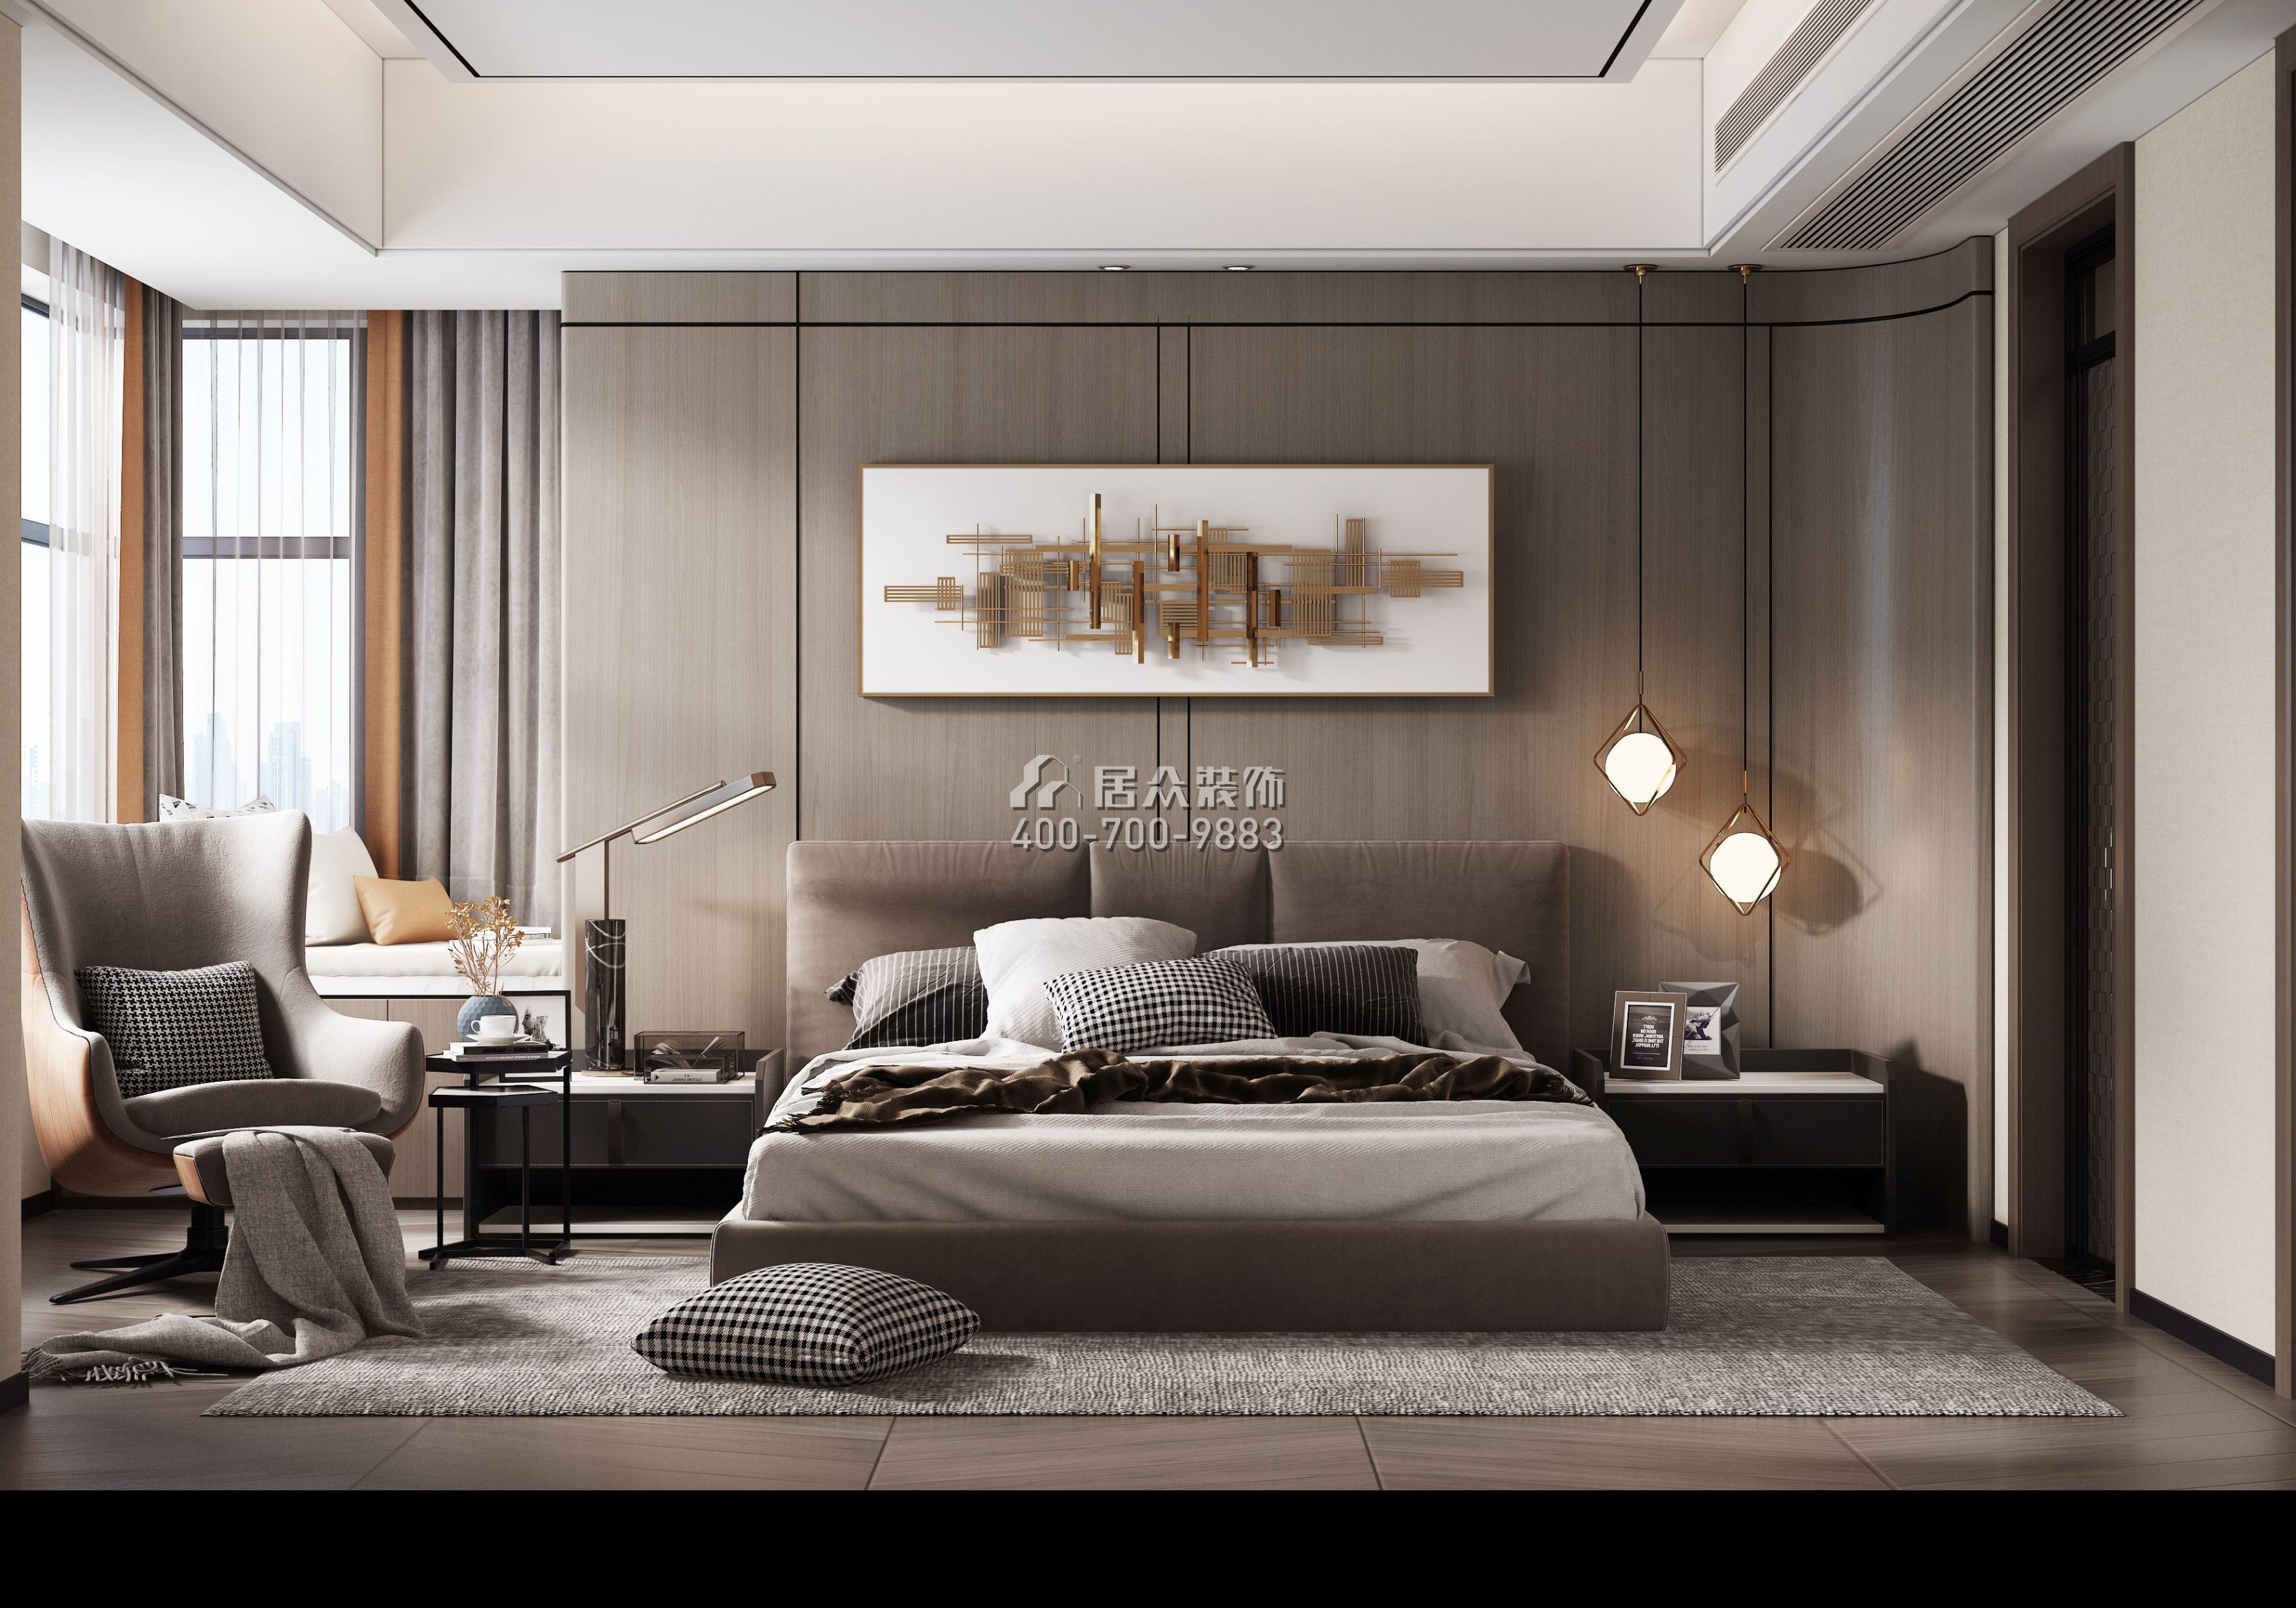 万达湖公馆188平方米现代简约风格平层户型卧室装修效果图